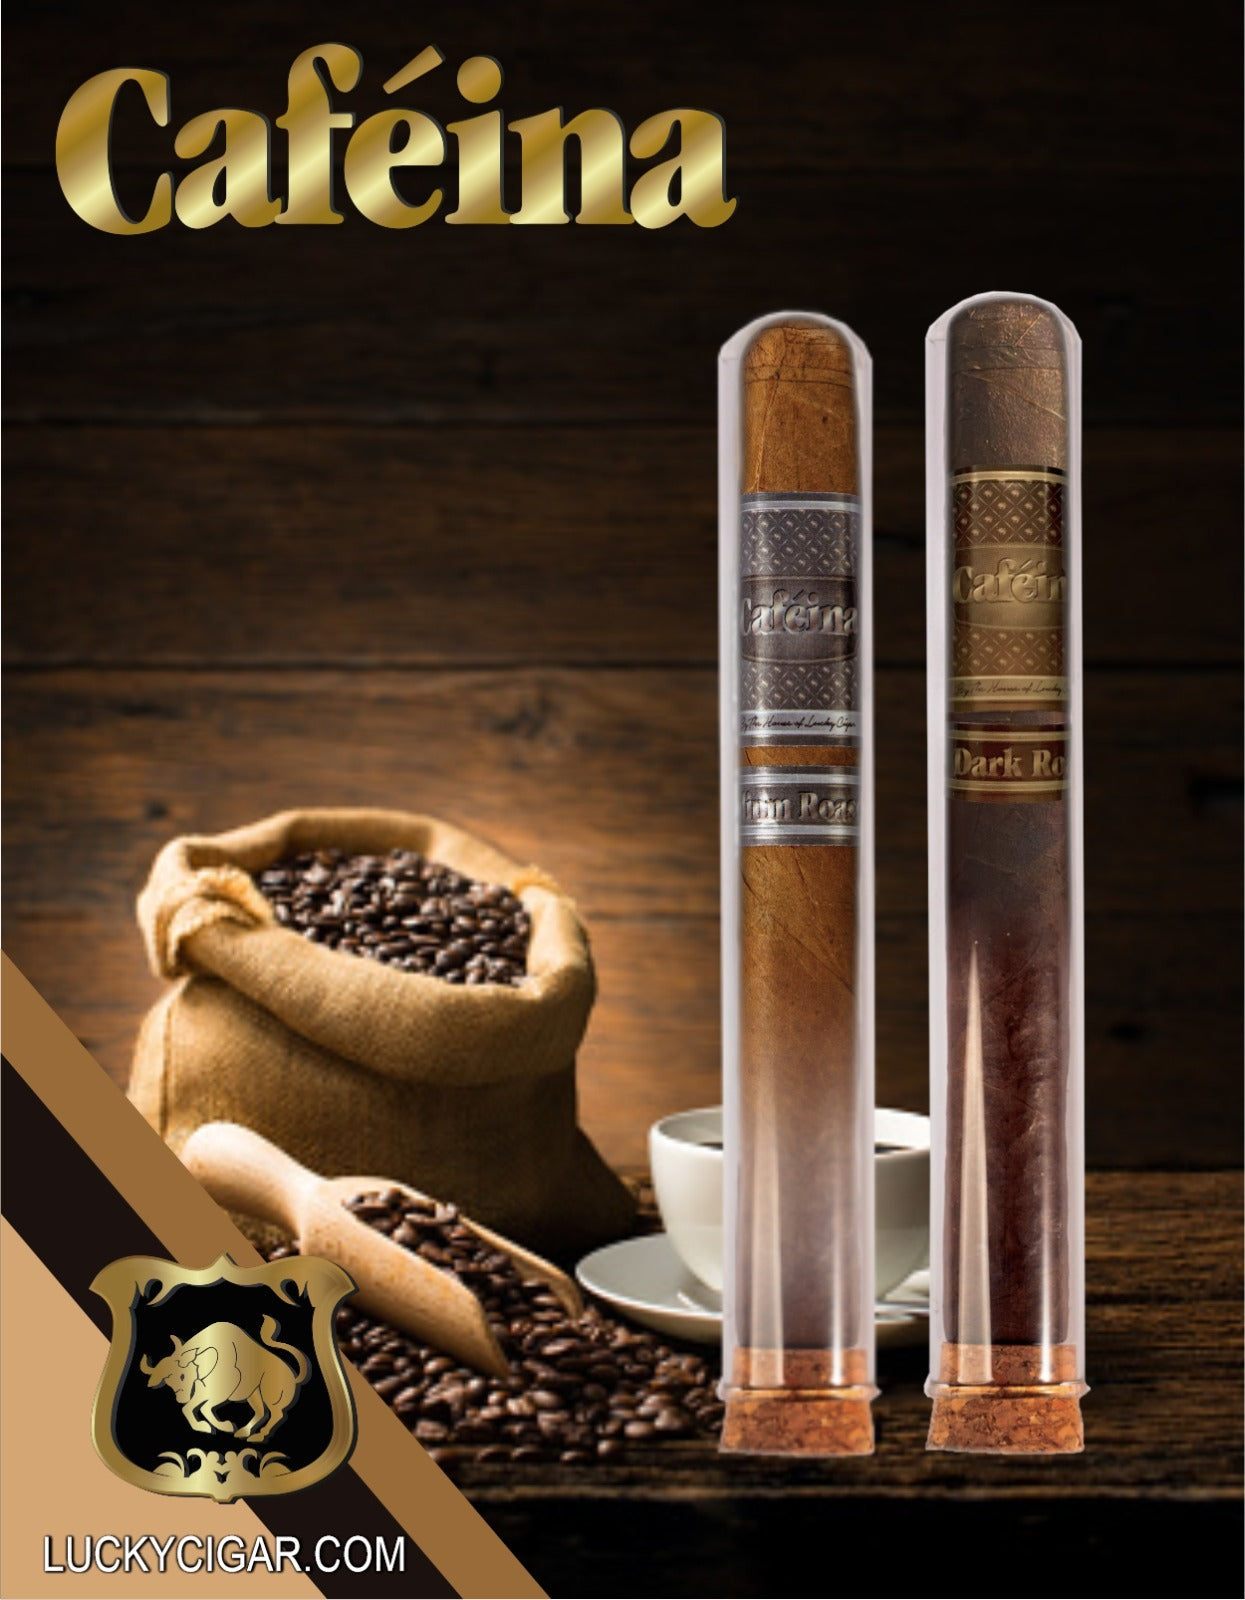 Infused Cigars:  Set of 2 Cigars, 1 Cafeina Dark Roast, 1 Cafeina Medium Roast in Crystal 6x50